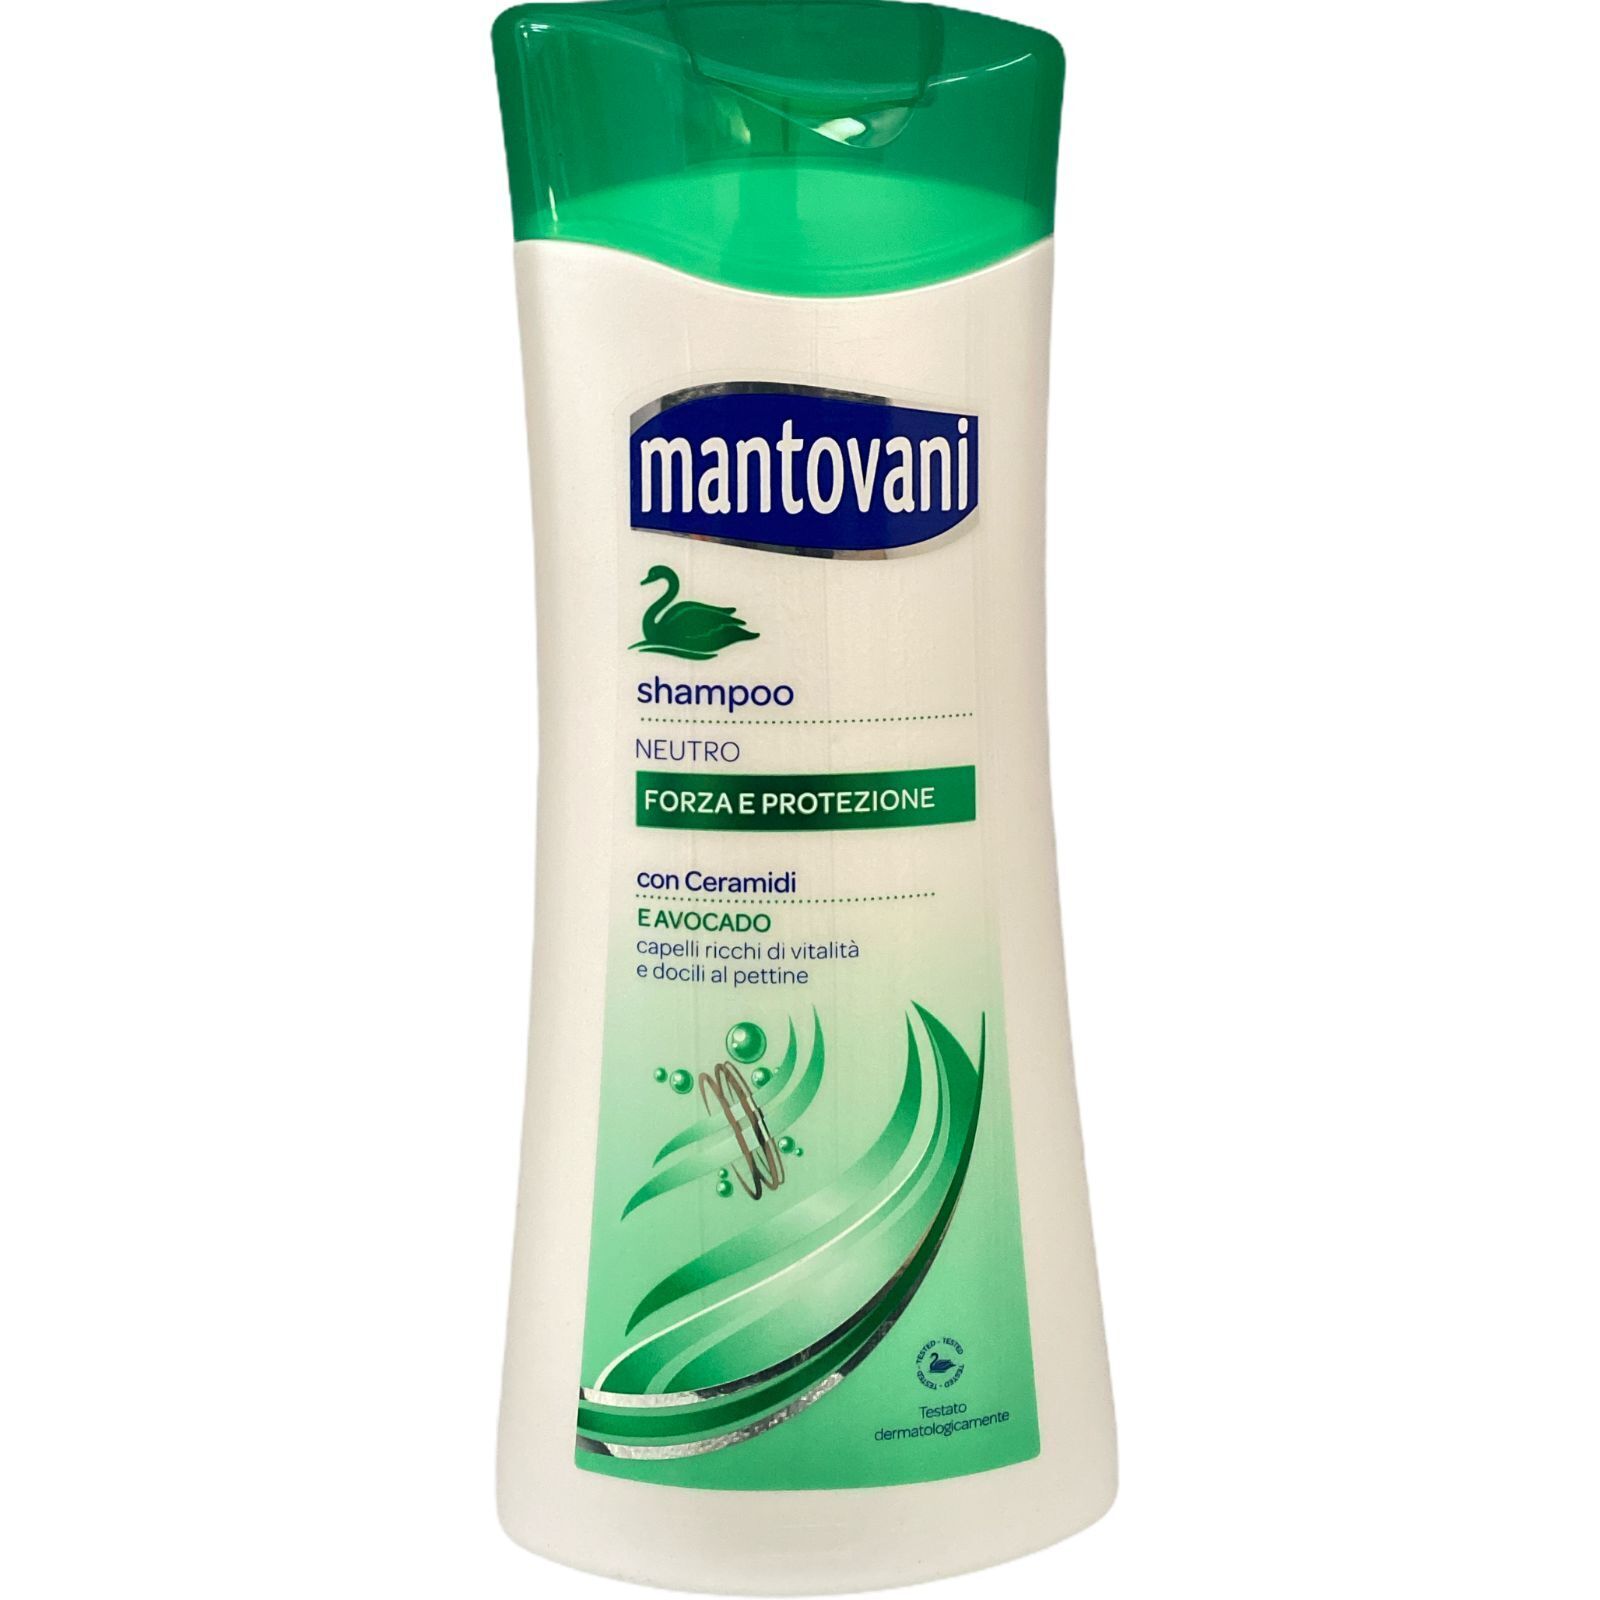 Mantovani Shampoo Neutro Forza e Protezione